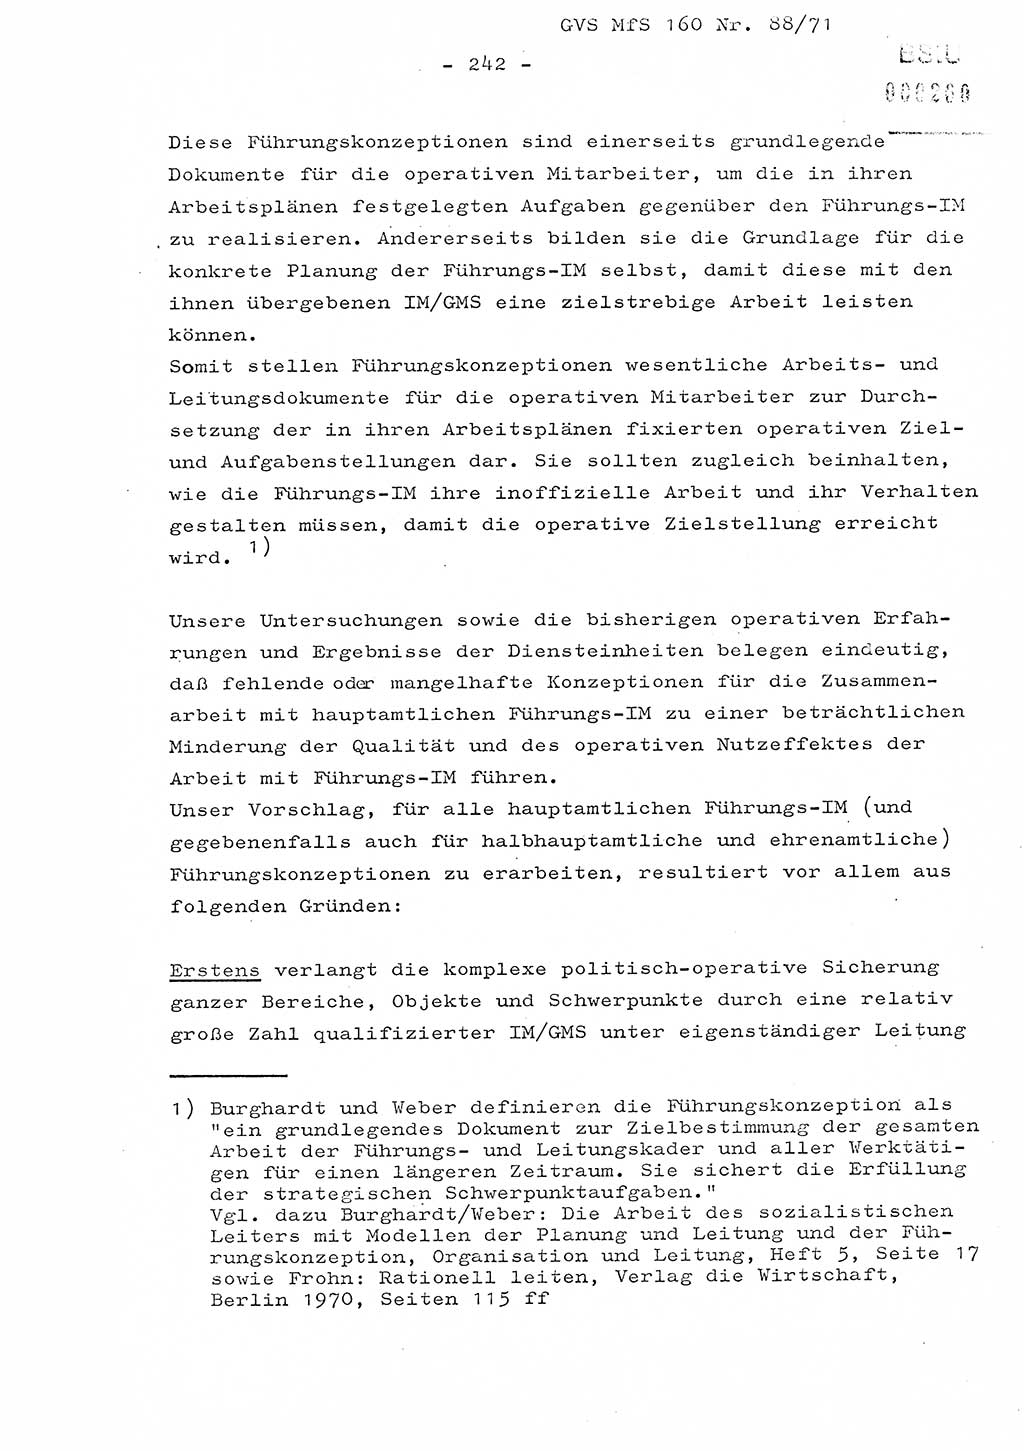 Dissertation Oberstleutnant Josef Schwarz (BV Schwerin), Major Fritz Amm (JHS), Hauptmann Peter Gräßler (JHS), Ministerium für Staatssicherheit (MfS) [Deutsche Demokratische Republik (DDR)], Juristische Hochschule (JHS), Geheime Verschlußsache (GVS) 160-88/71, Potsdam 1972, Seite 242 (Diss. MfS DDR JHS GVS 160-88/71 1972, S. 242)